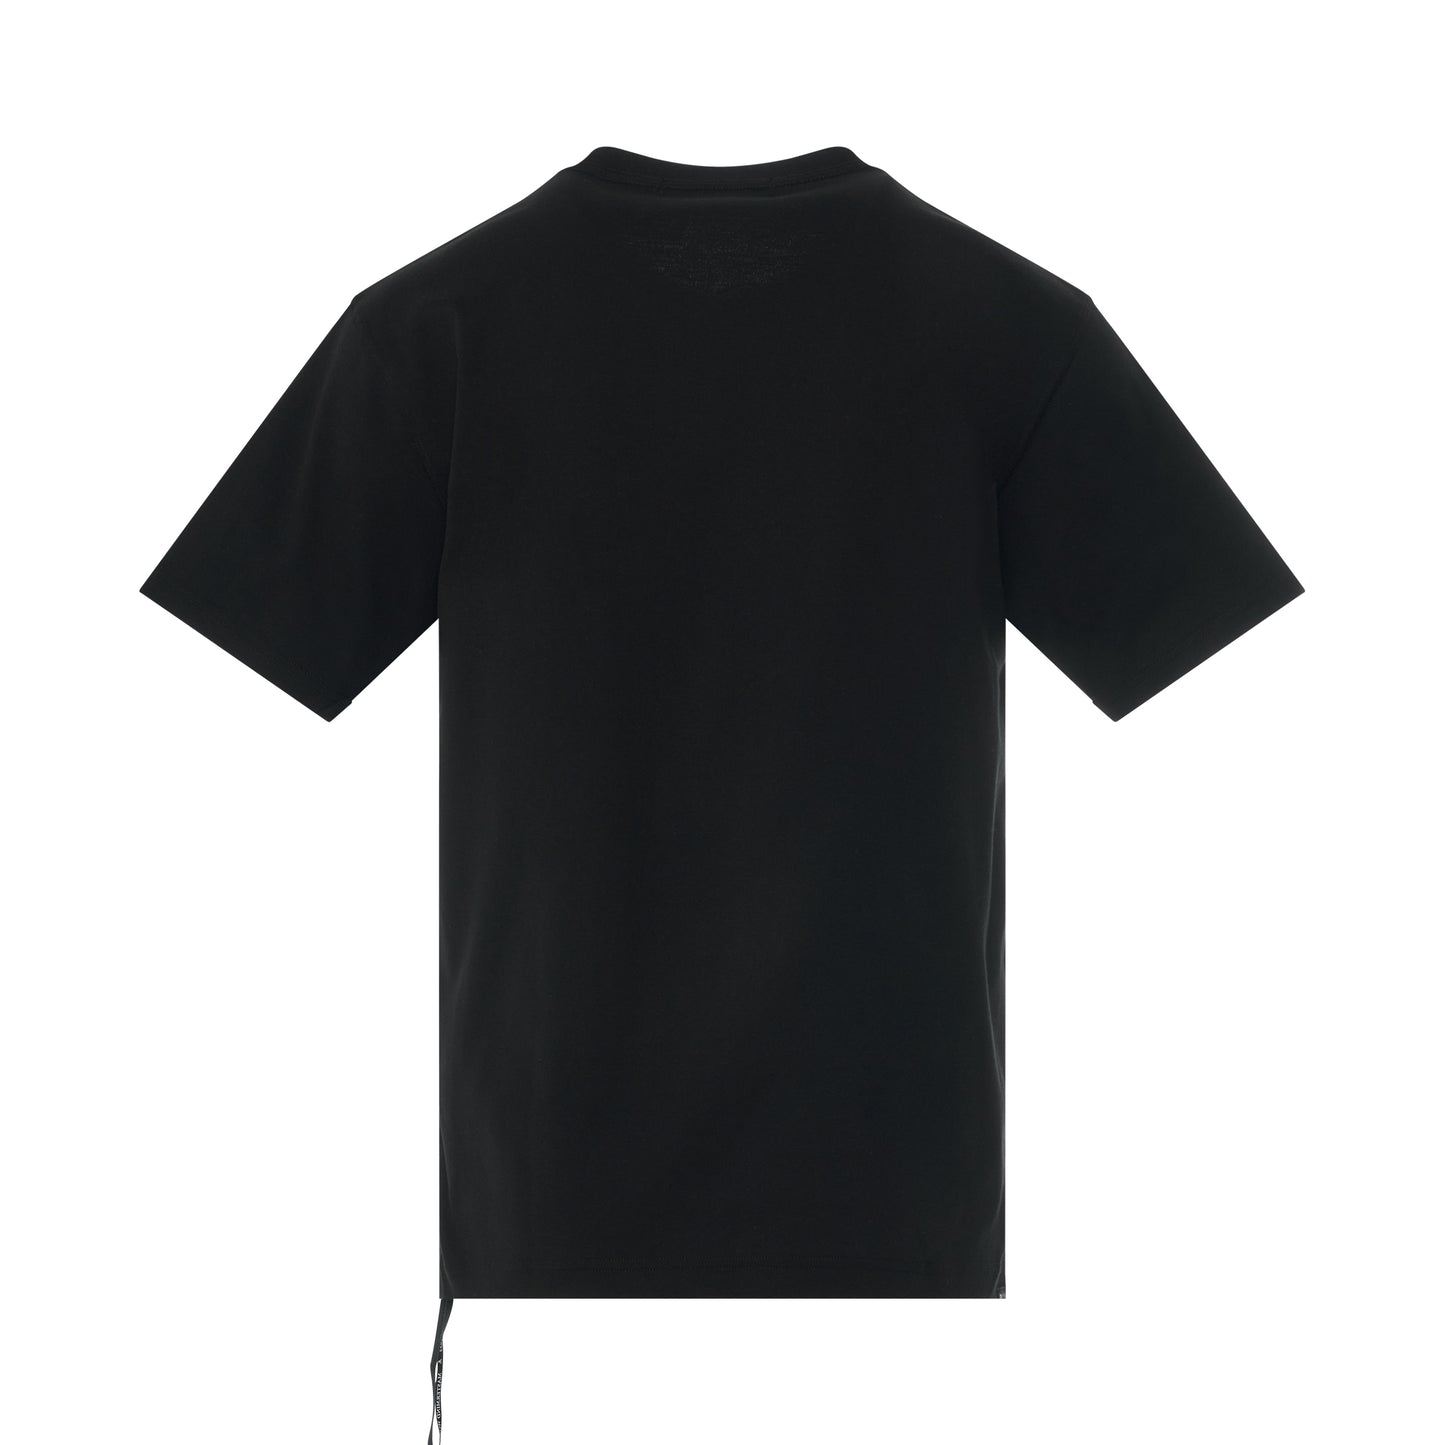 Glassbeads Skull T-Shirt in Black